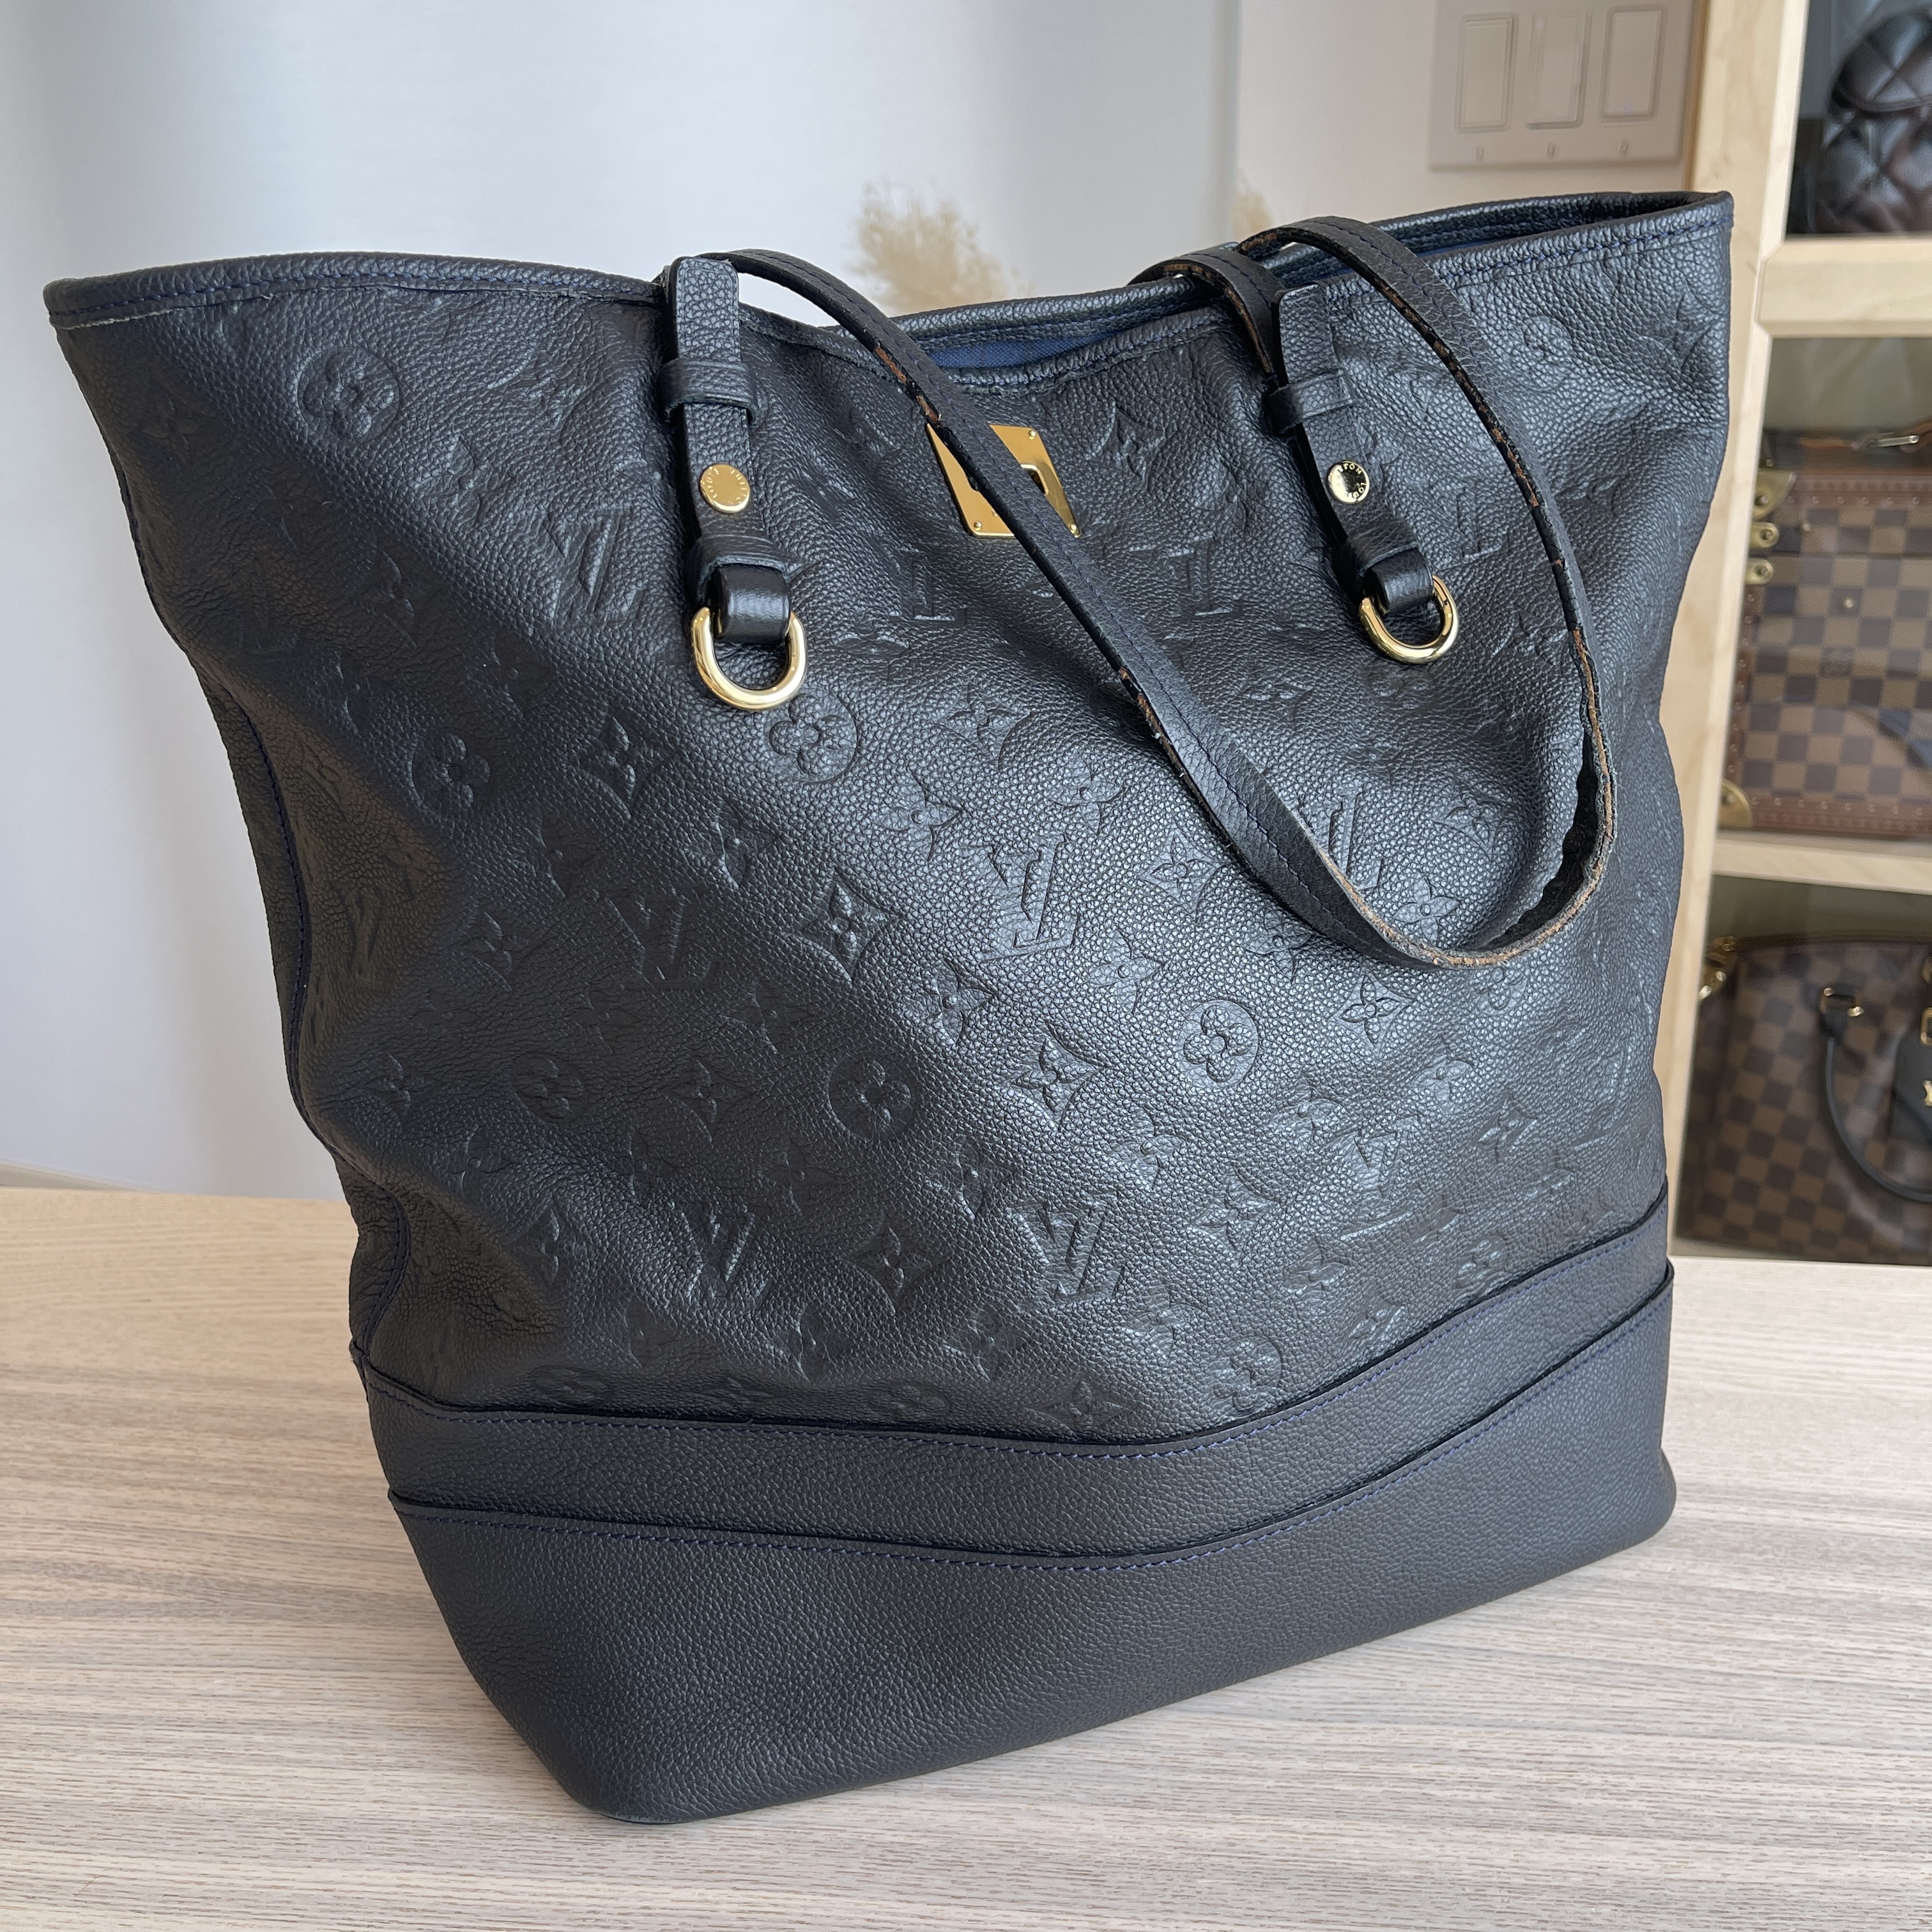 Louis Vuitton Black Infini Empreinte Leather Monogram Citadine